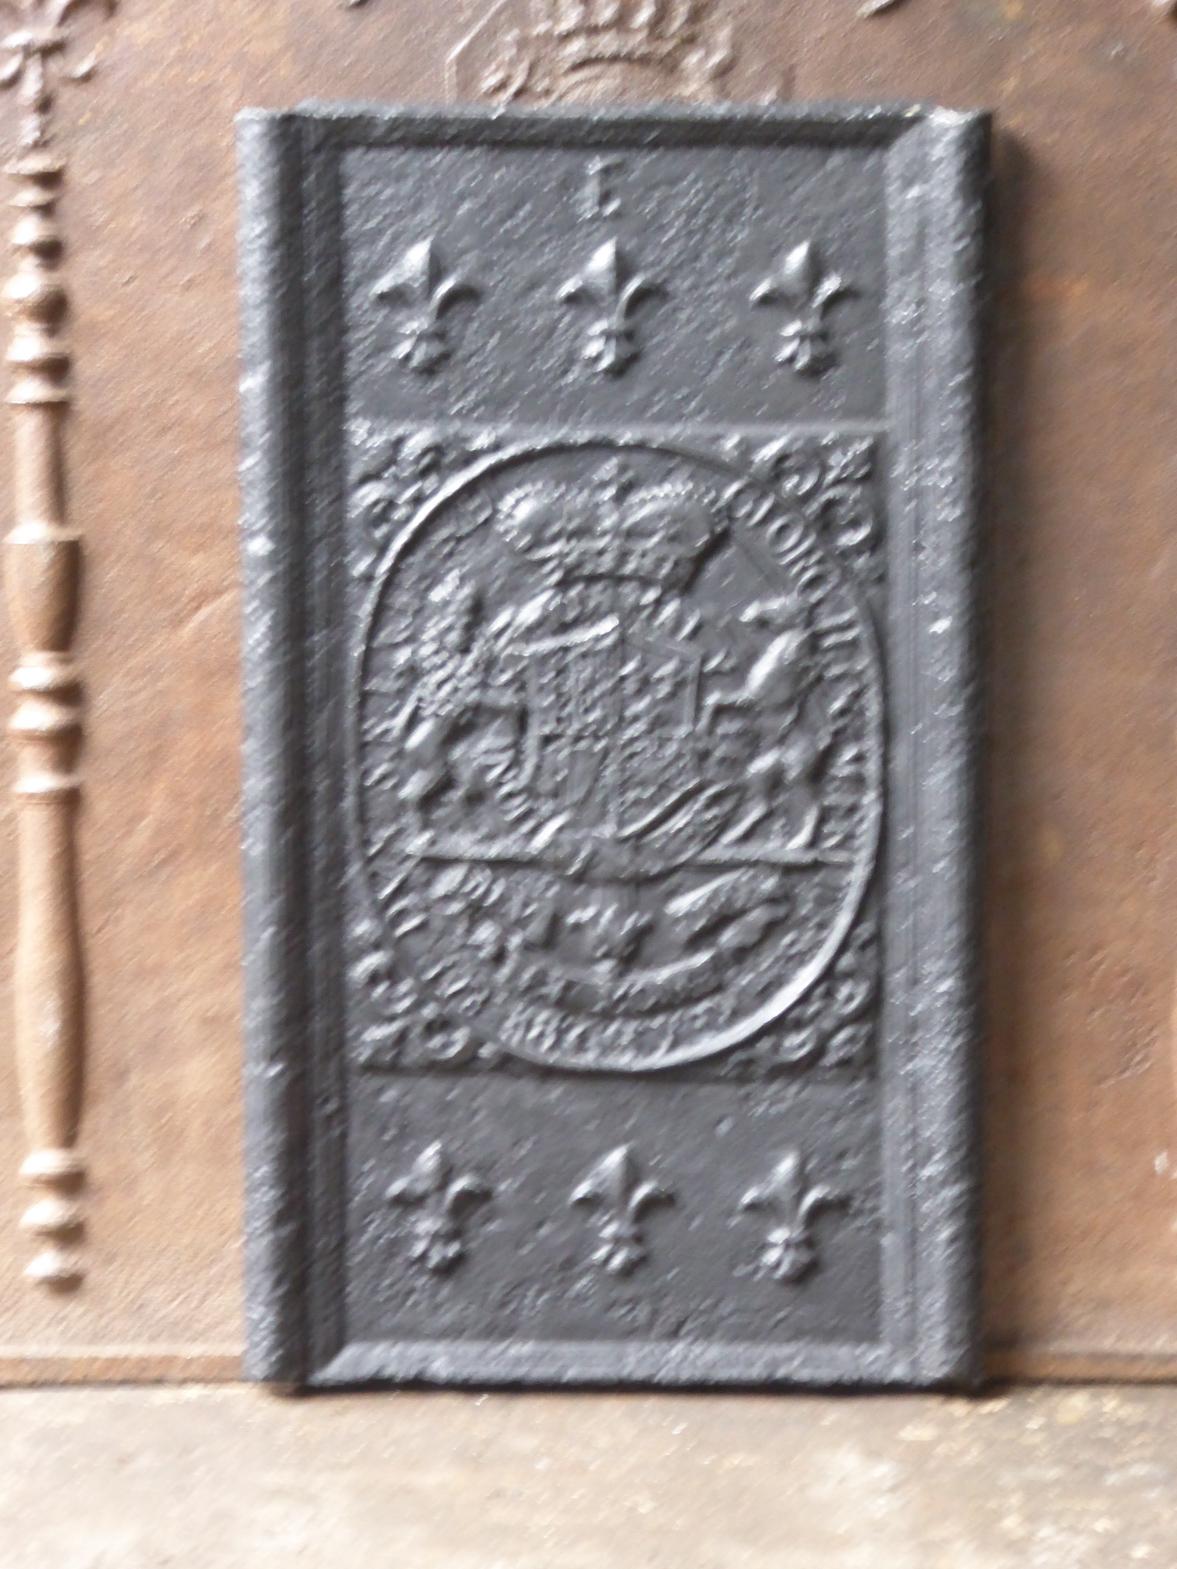 Plaque de cheminée allemande du 17e - 18e siècle, d'époque Louis XIV, avec des armoiries inconnues.

La plaque de cheminée est en fonte et a une patine noire/étain. La plaque de cheminée est en bon état et ne présente pas de